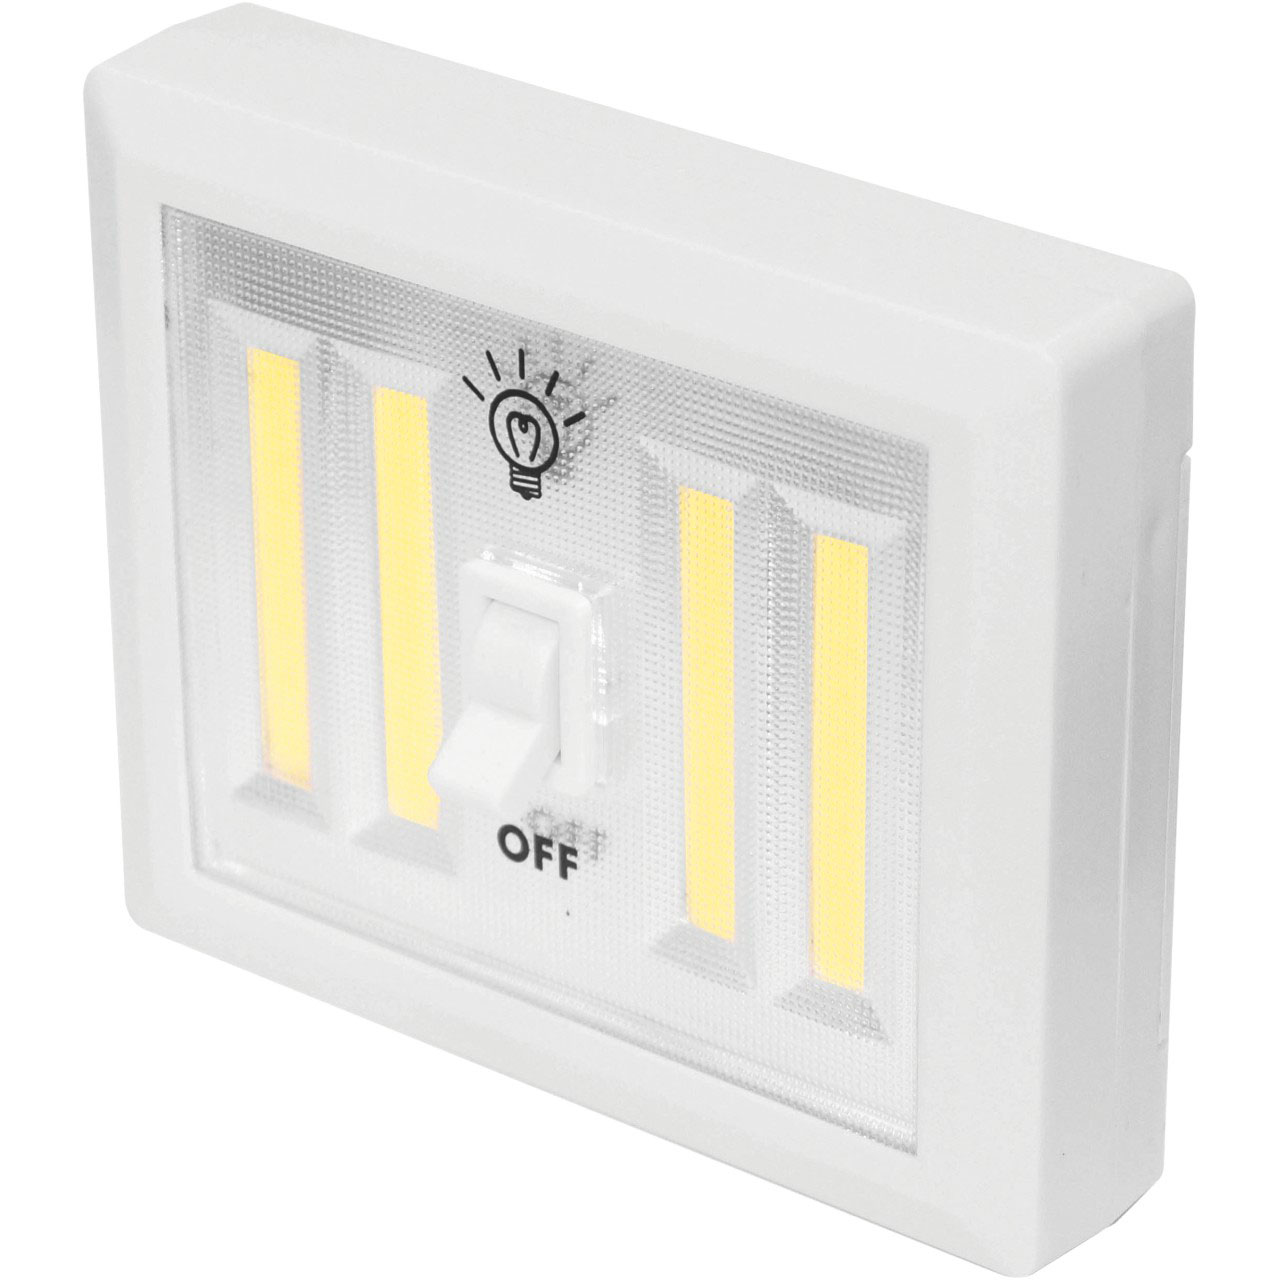 4-COB LED Light Switch